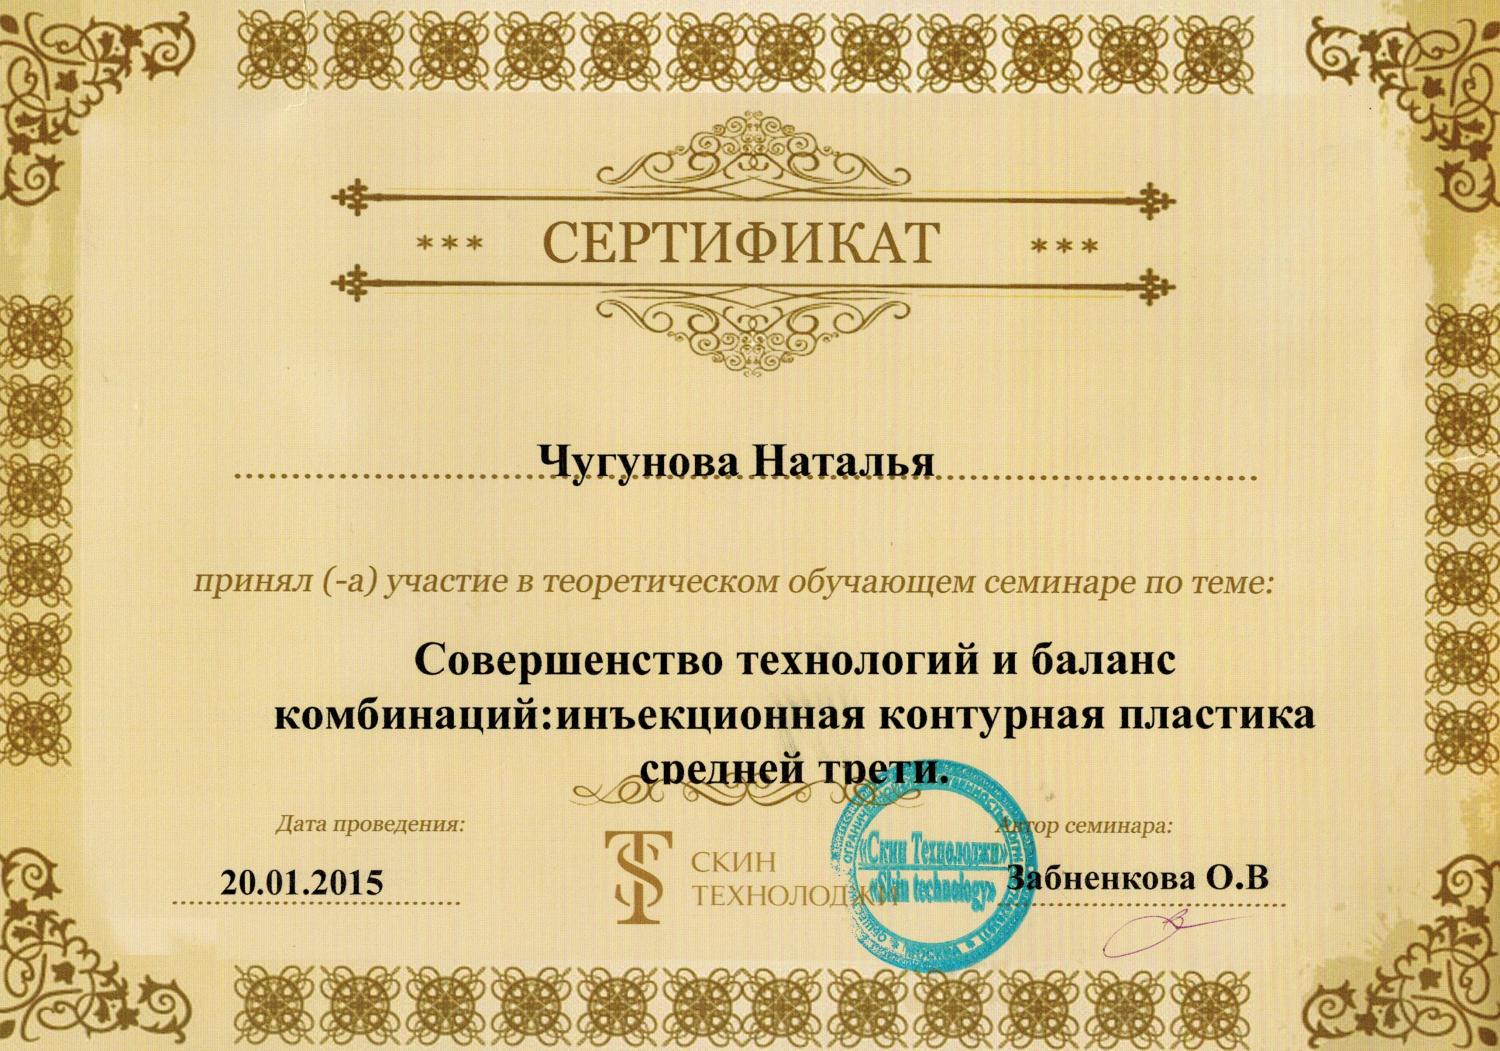 Сертификаты спб мужчине. Сертификат цоо. Сертификат цоо молодежный. Сертификат в центр косметологии Яковлев. Фото сертификата цоо.